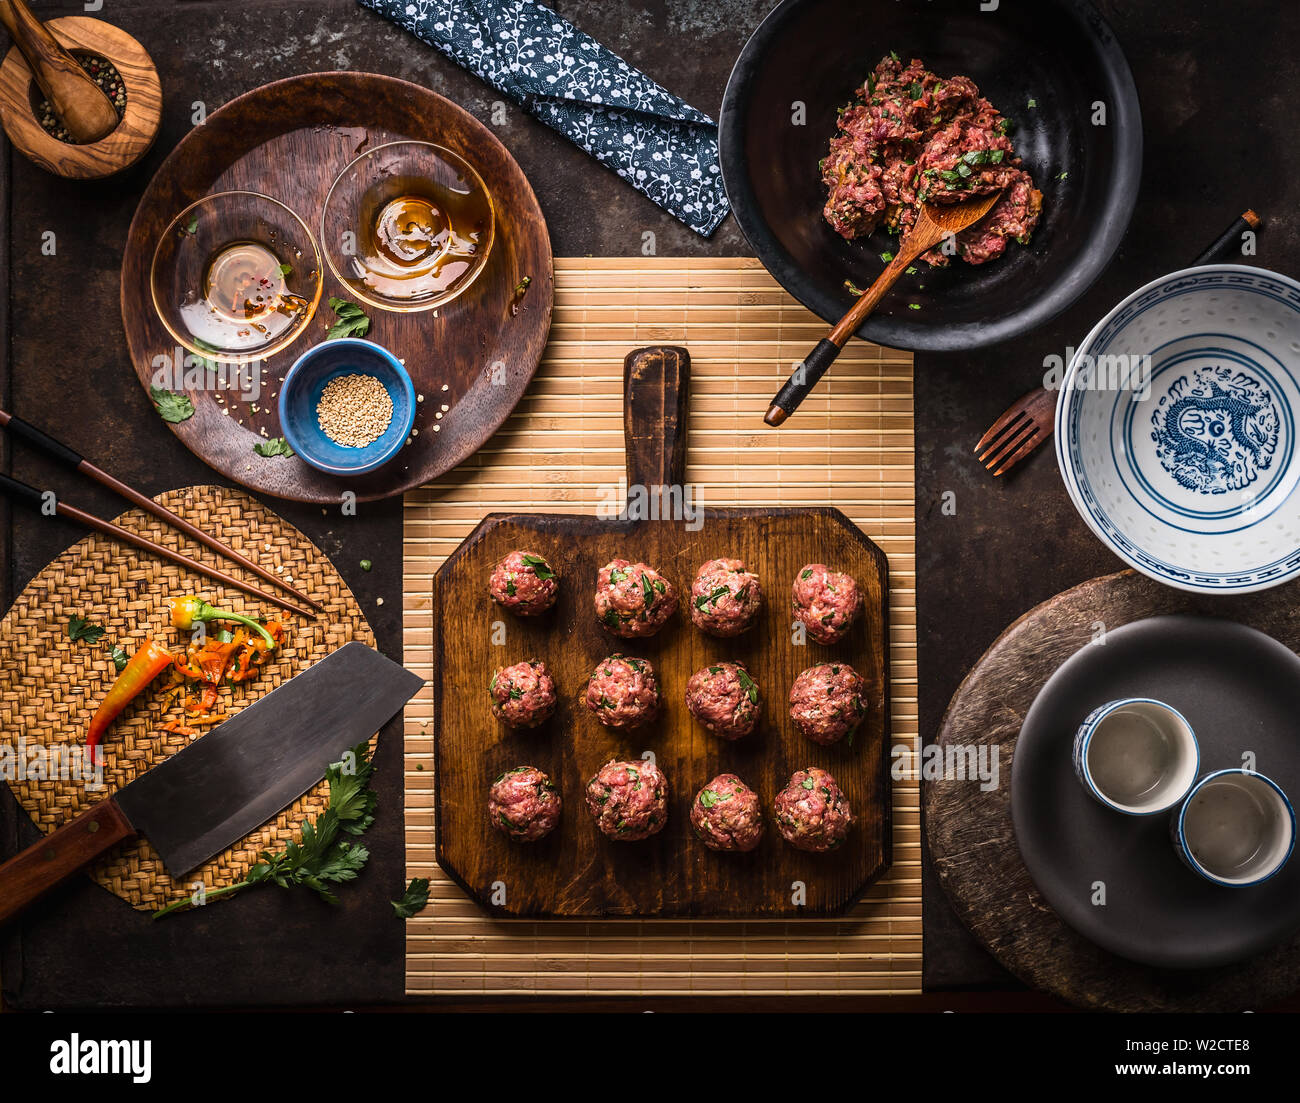 Asiatische Fleischbällchen auf Holz Schneidebrett mit Zutaten, Küchengeräte, Schüsseln und Teller, Ansicht von oben. Asiatische Küche Konzept Stockfoto